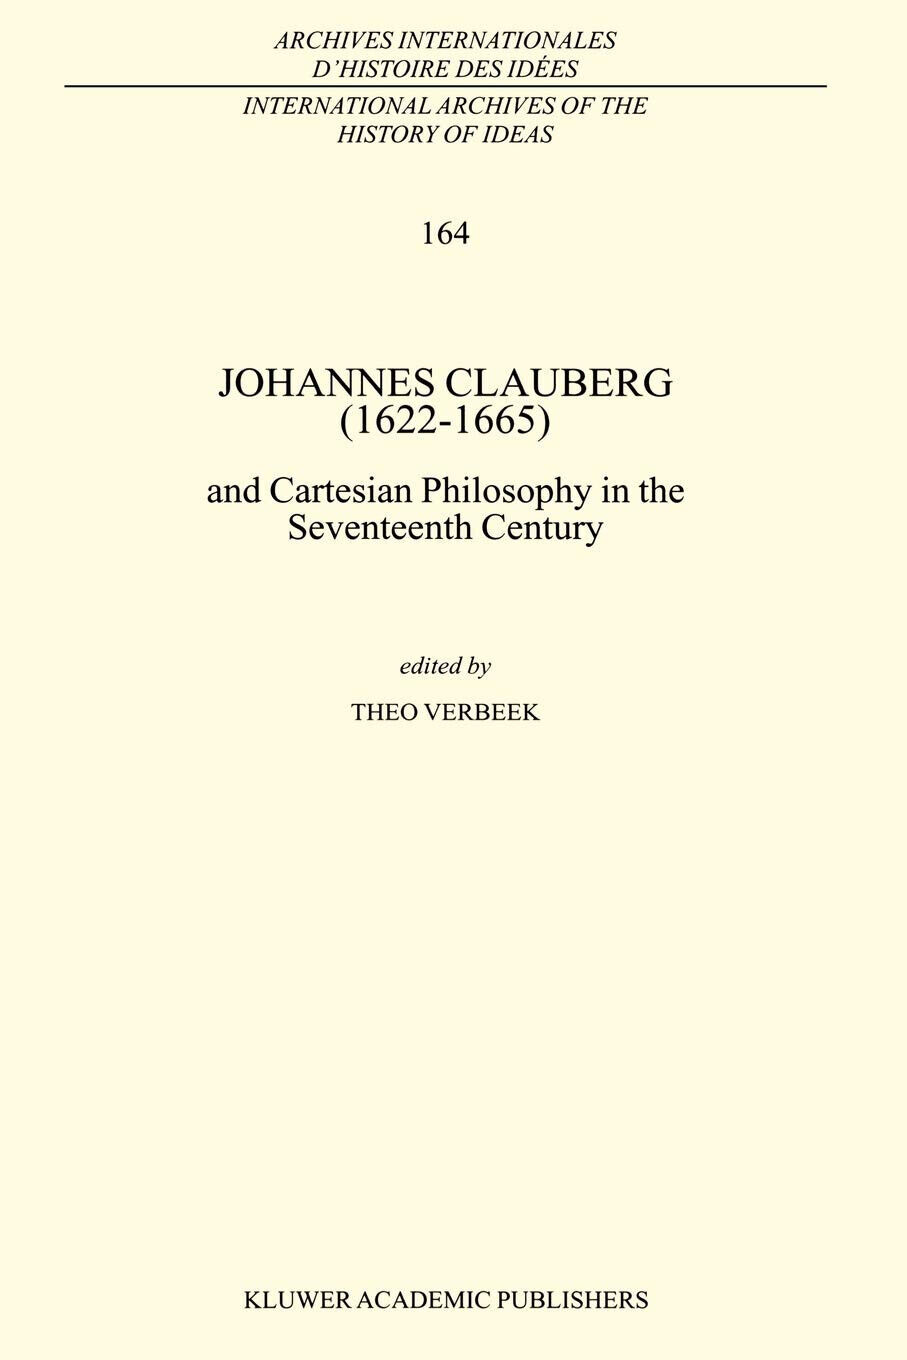 Johannes Clauberg (1622-1665) - T. Verbeek - Springer, 2010